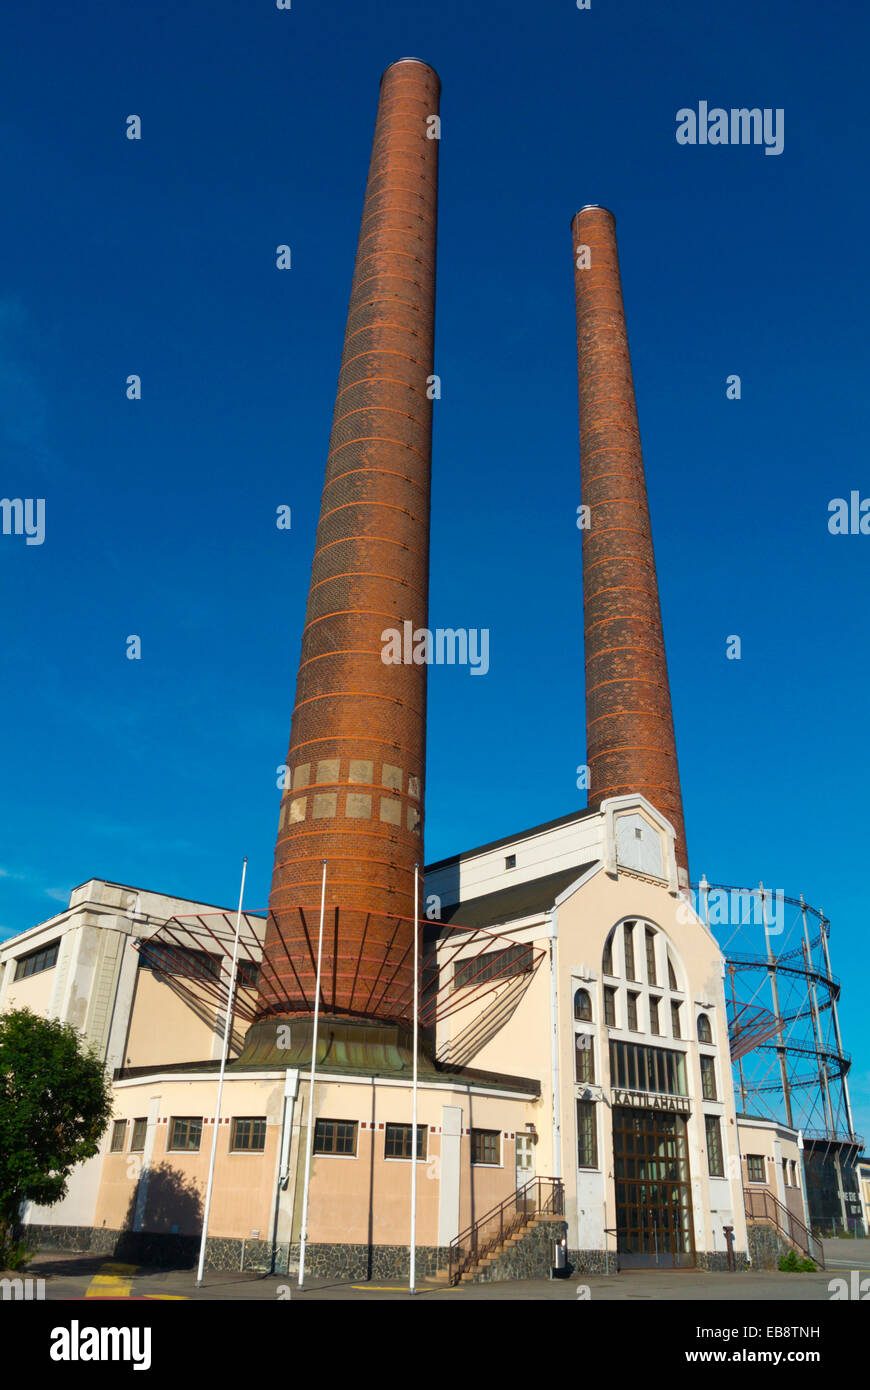 La turbina a vapore (1909), Suvilahti, ex energia area di produzione, ora convertito per attività culturali, Helsinki, Finlandia, Europa Foto Stock